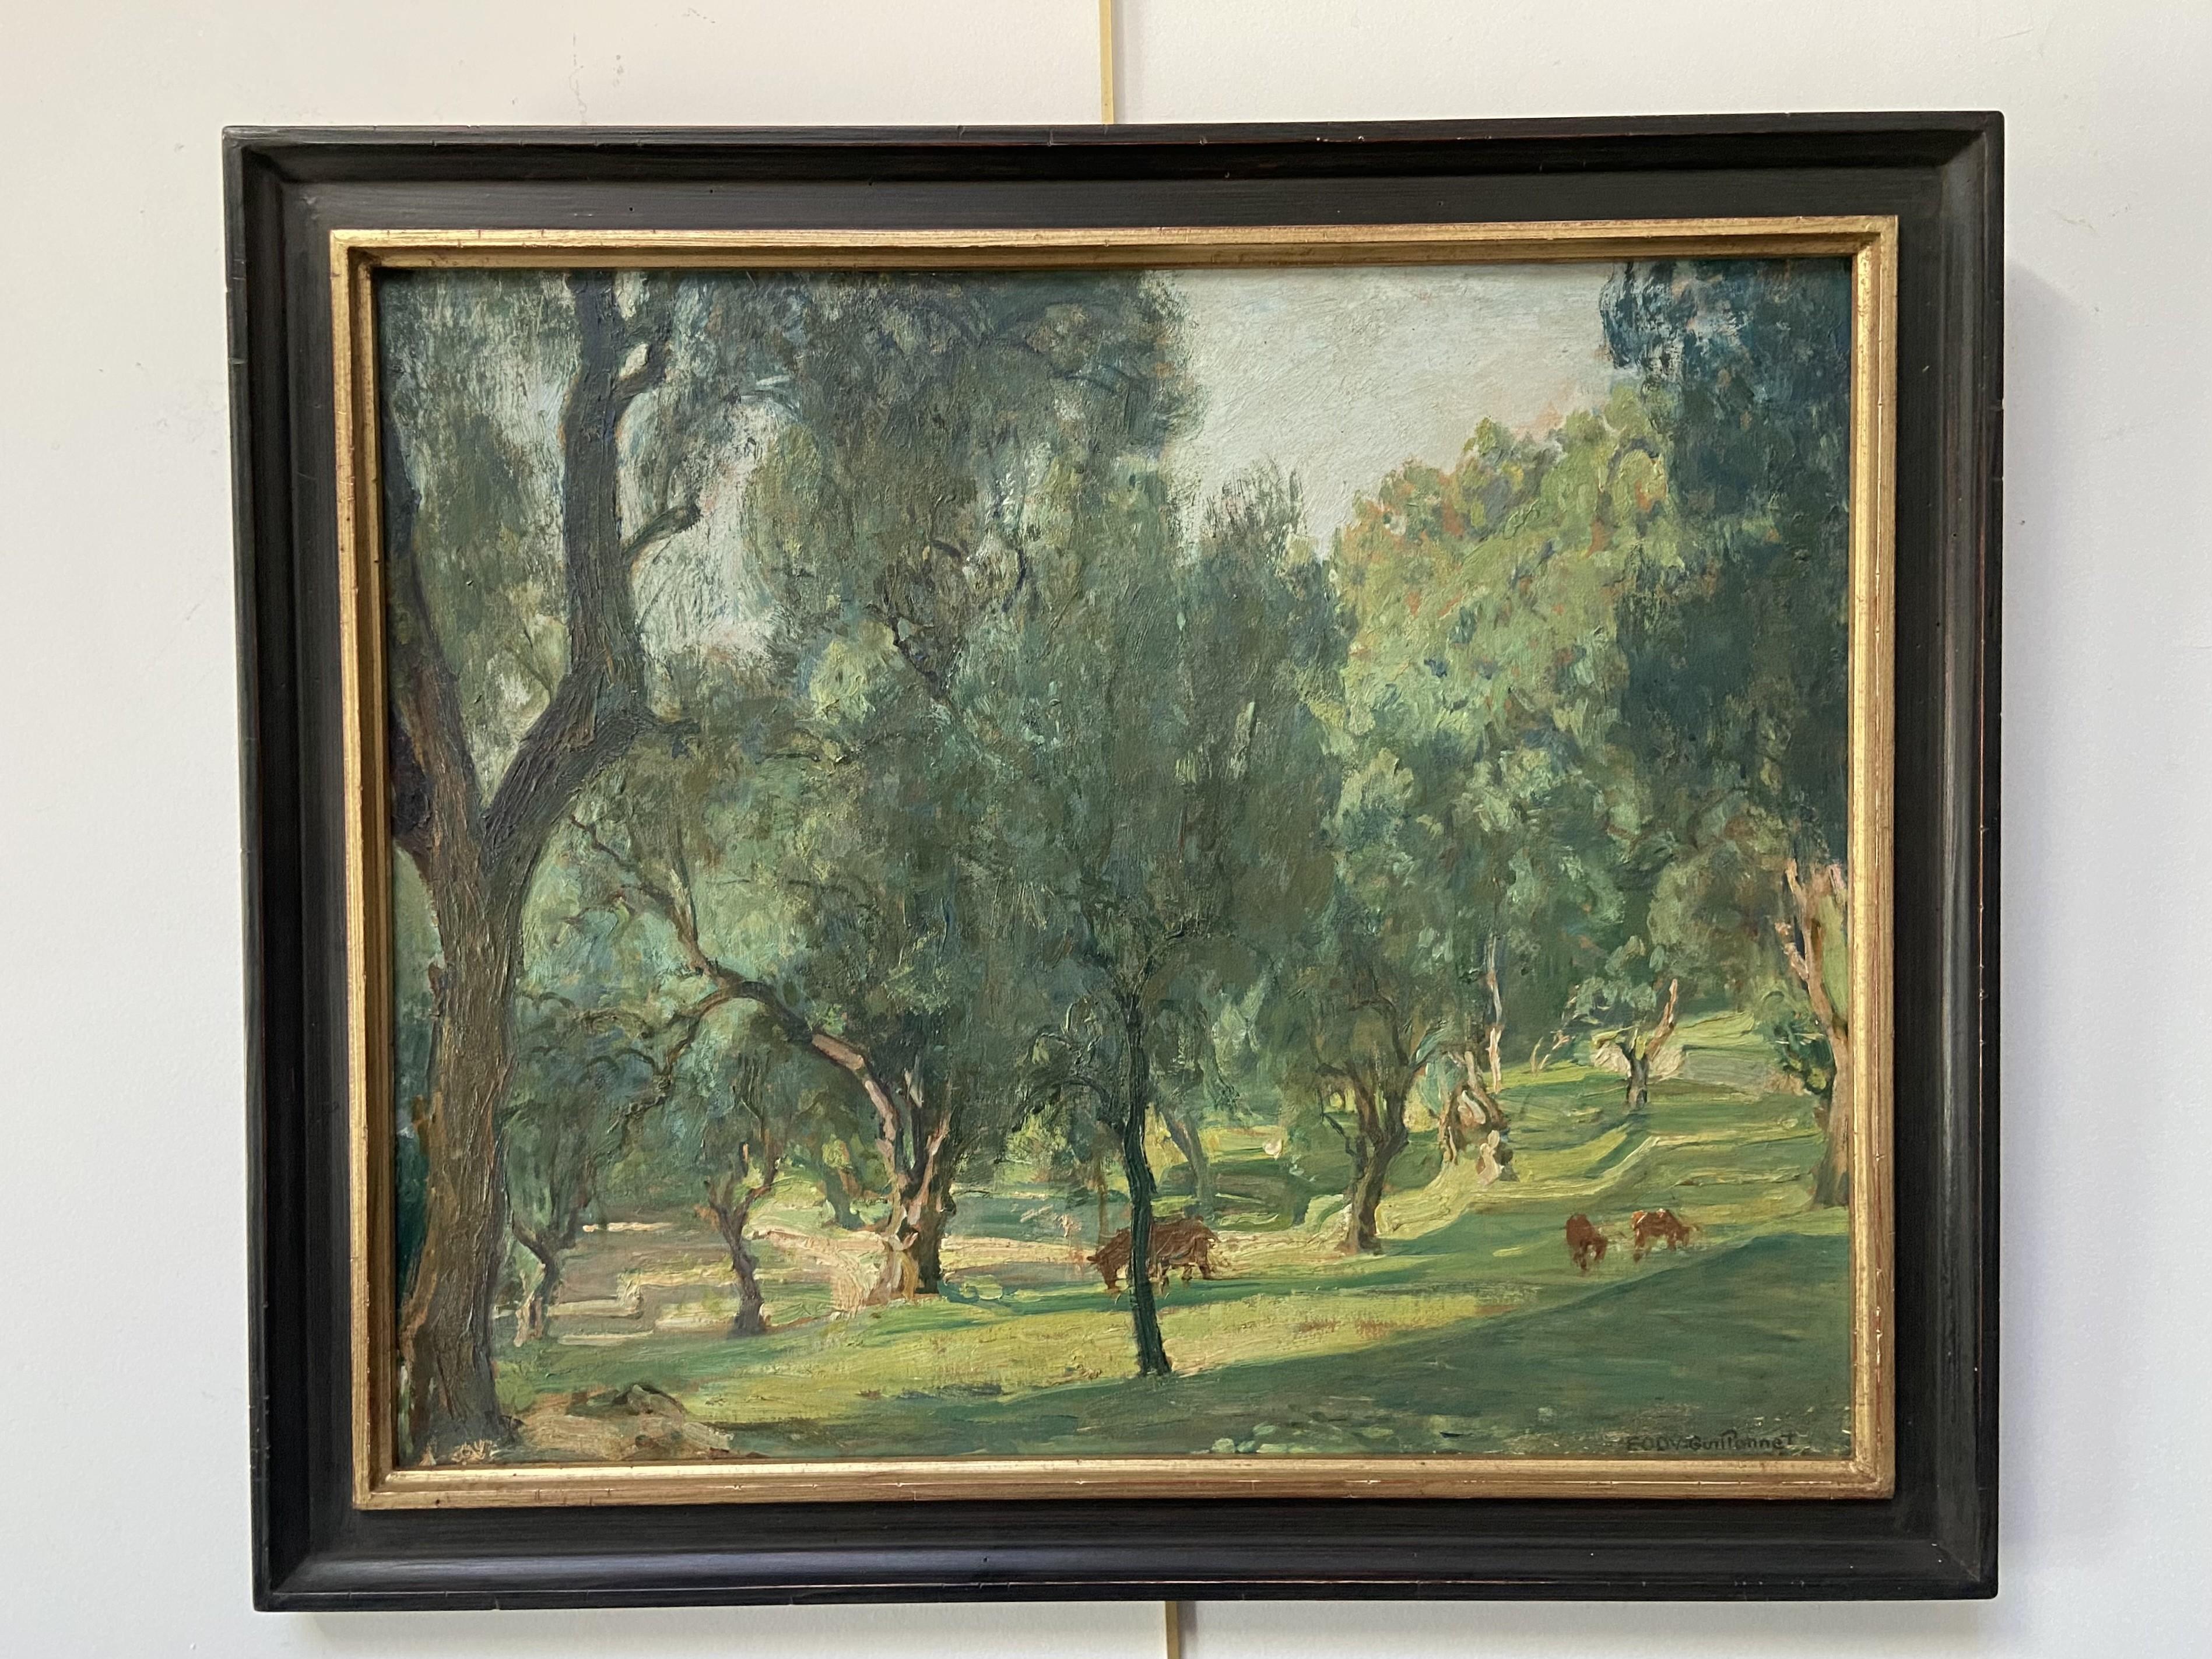 Octave Denis Victor Guillonnet (1872 - 1967) 
Les Oliviers, Eine Landschaft mit Olivenbäumen
signiert 